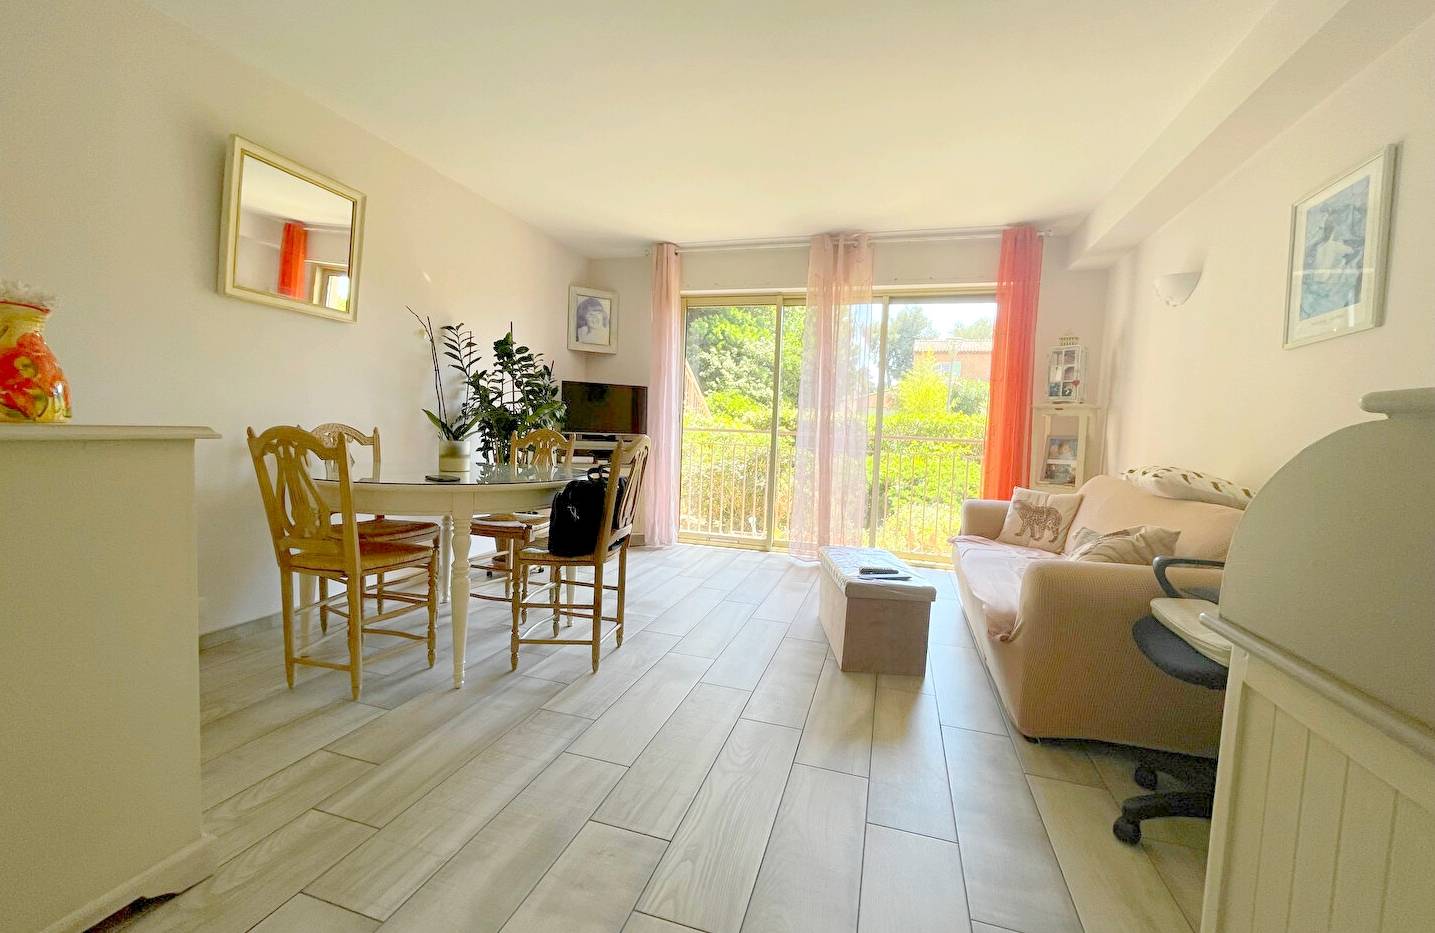 Appartement en rez-de-chaussée rénové à vendre Chemin Aimé Genoud à La Seyne-sur-Mer